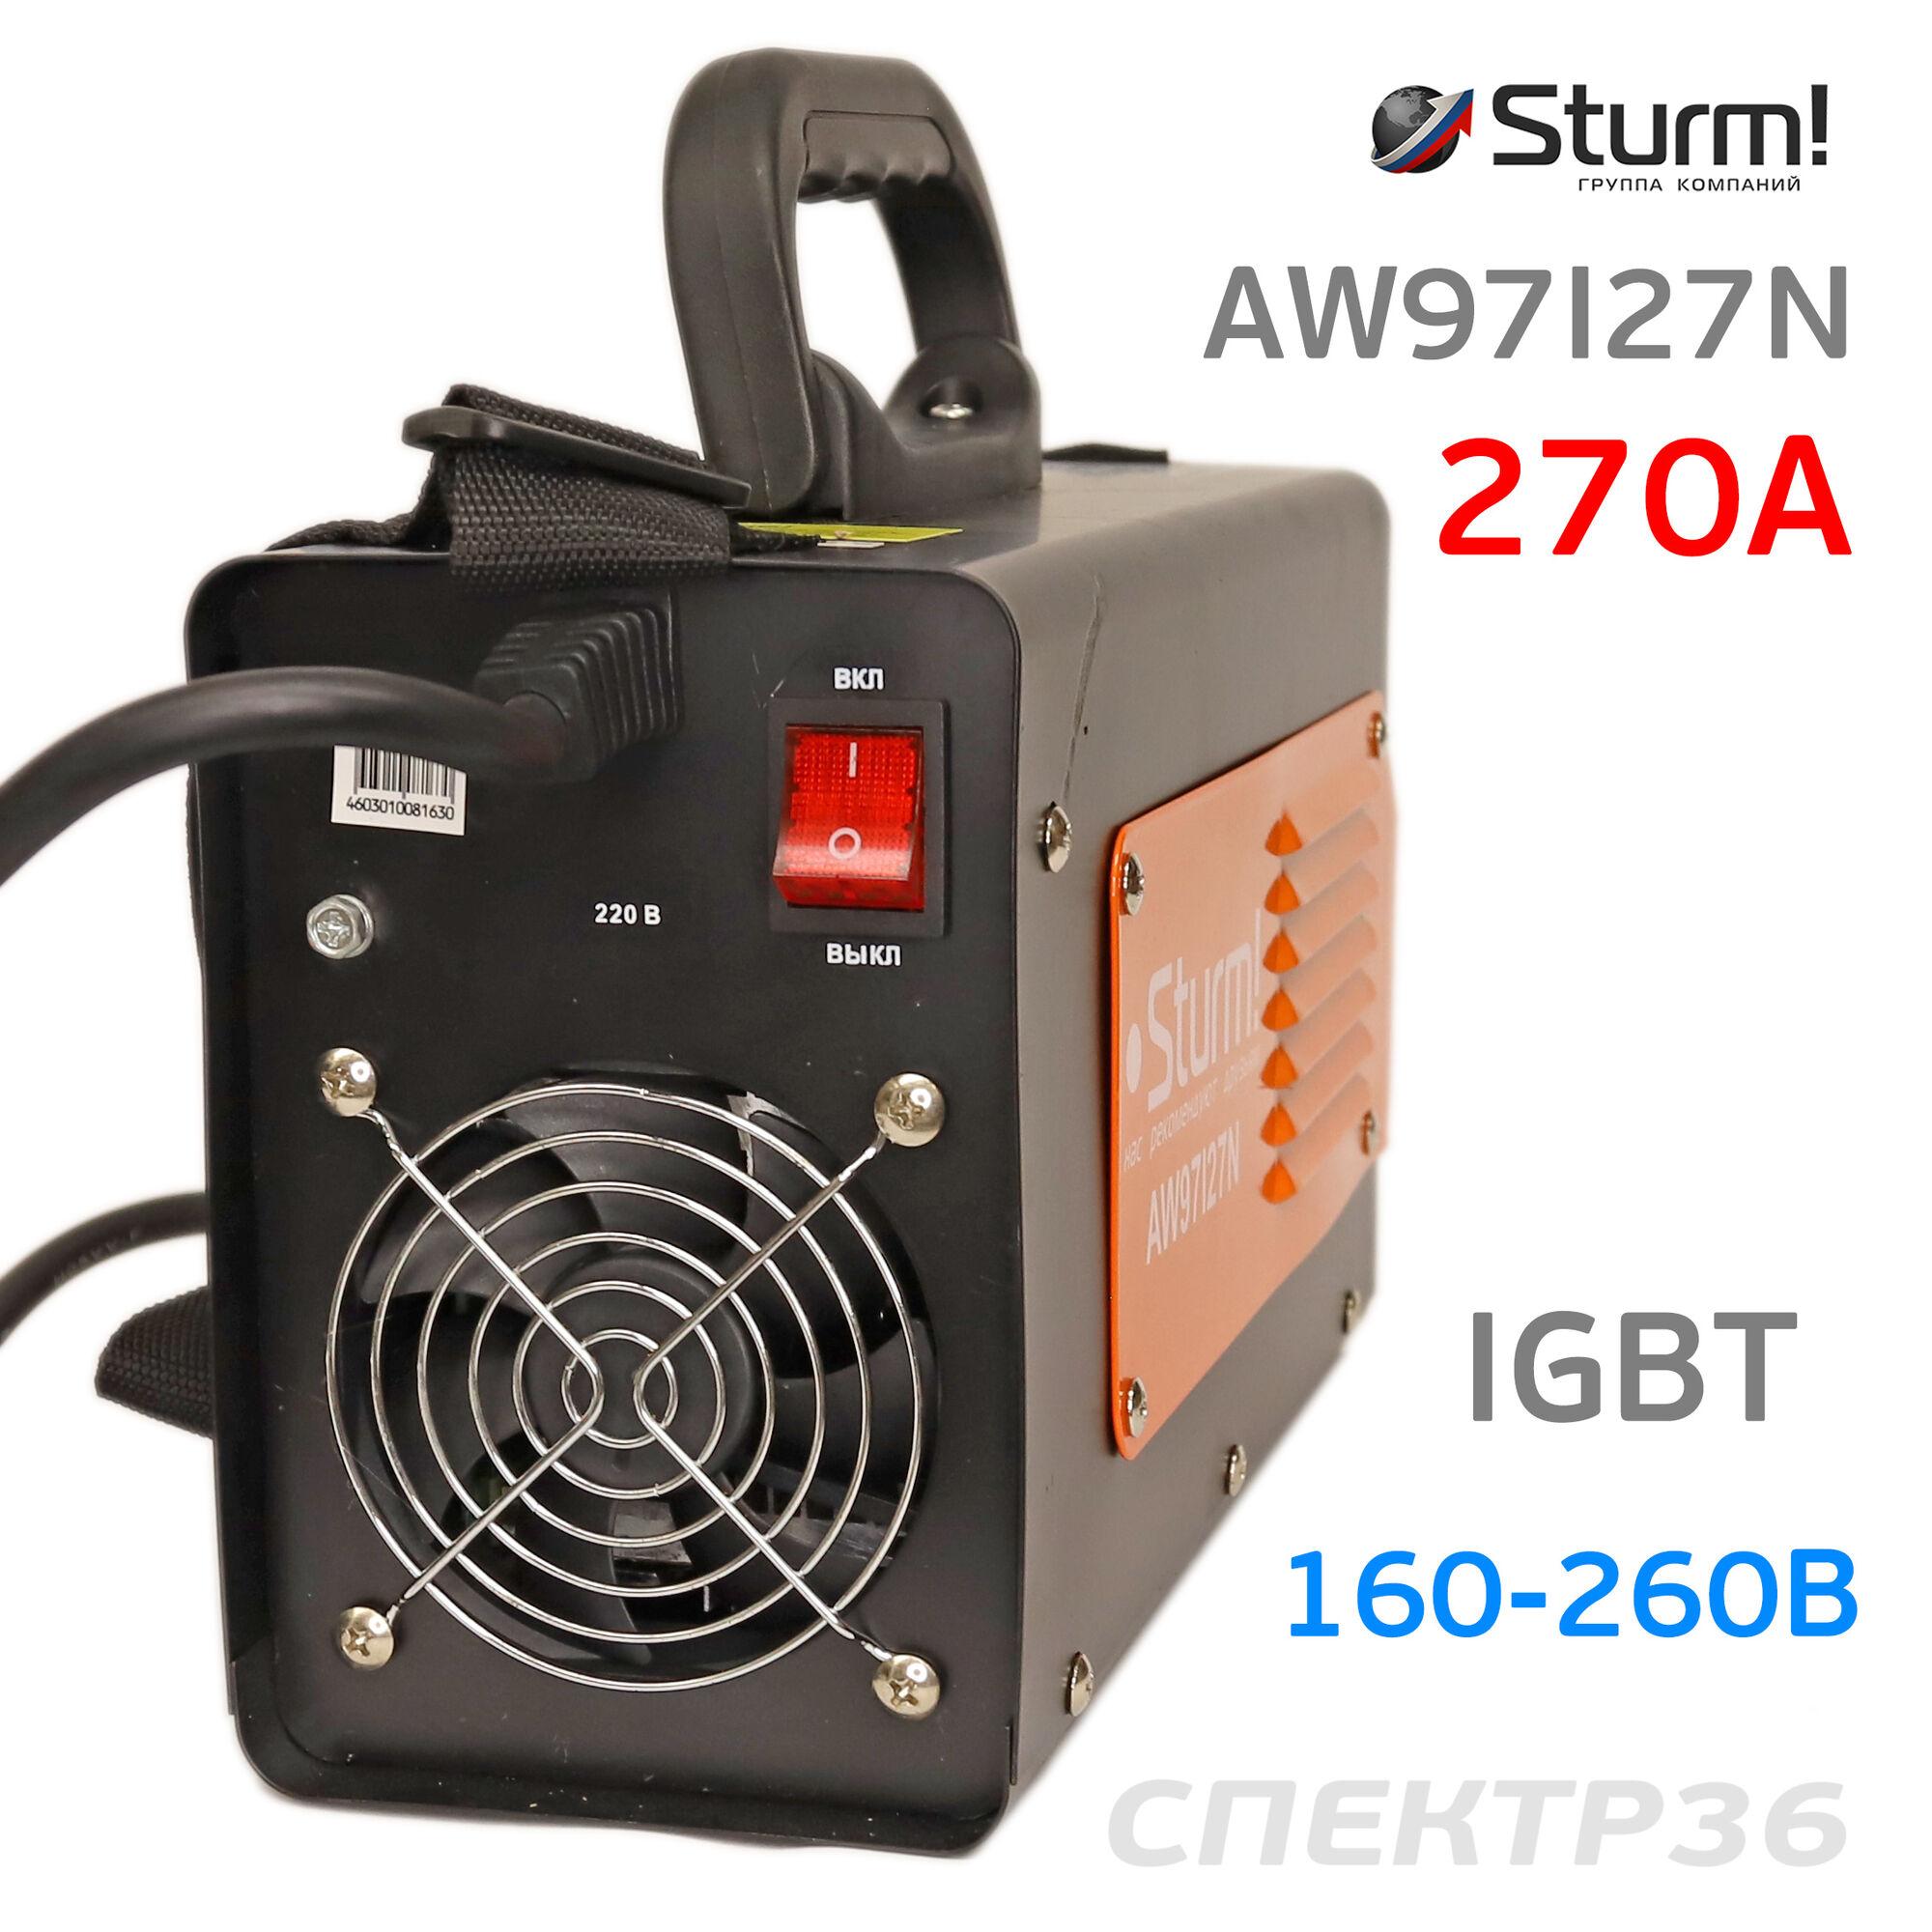 Инвертор Sturm AW97I27N (160-260В, 270 А) IGBT сварочный 3